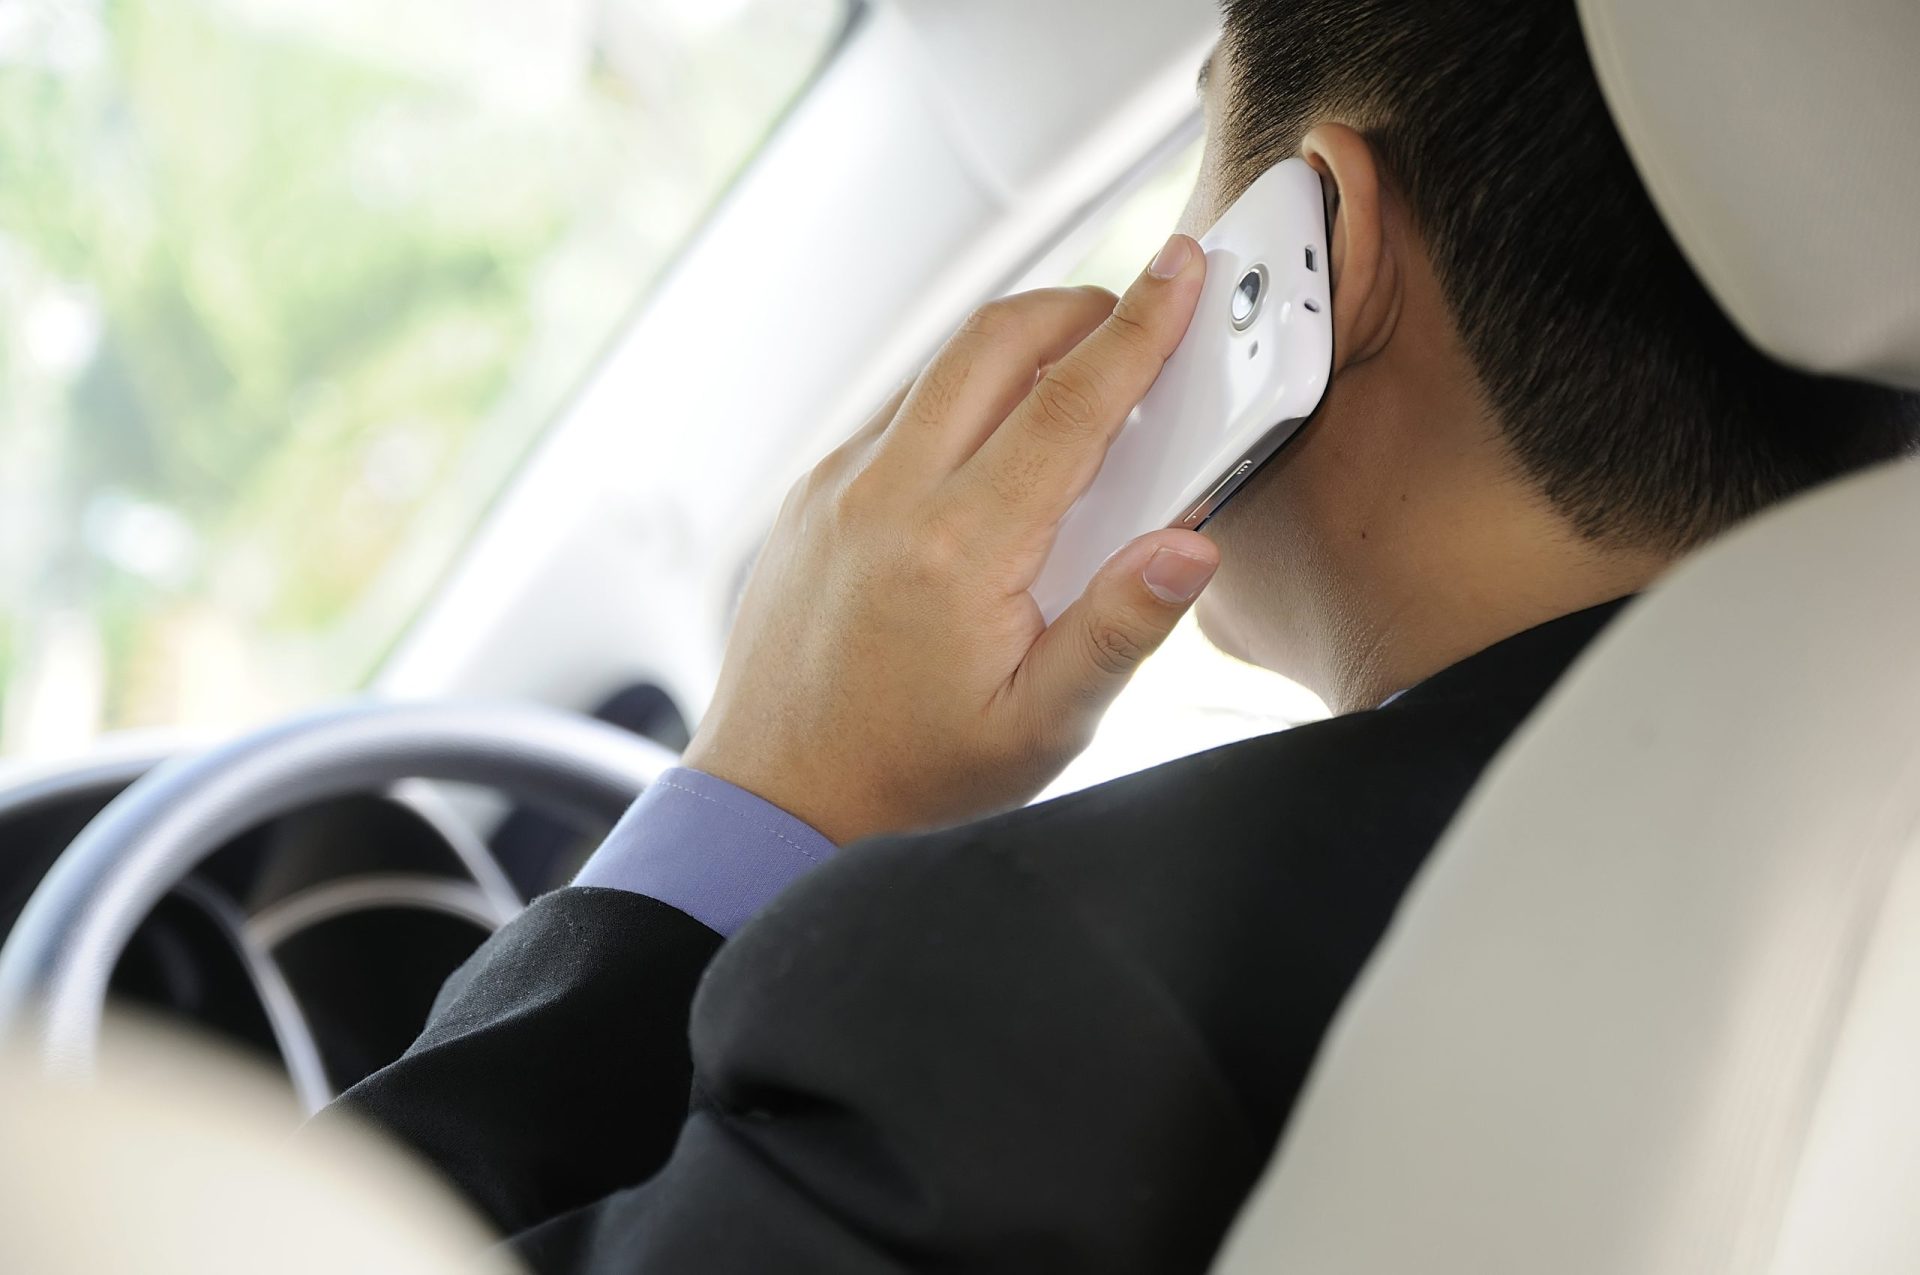 Arranca esta terça-feira a campanha “Ao volante, o telemóvel pode esperar”